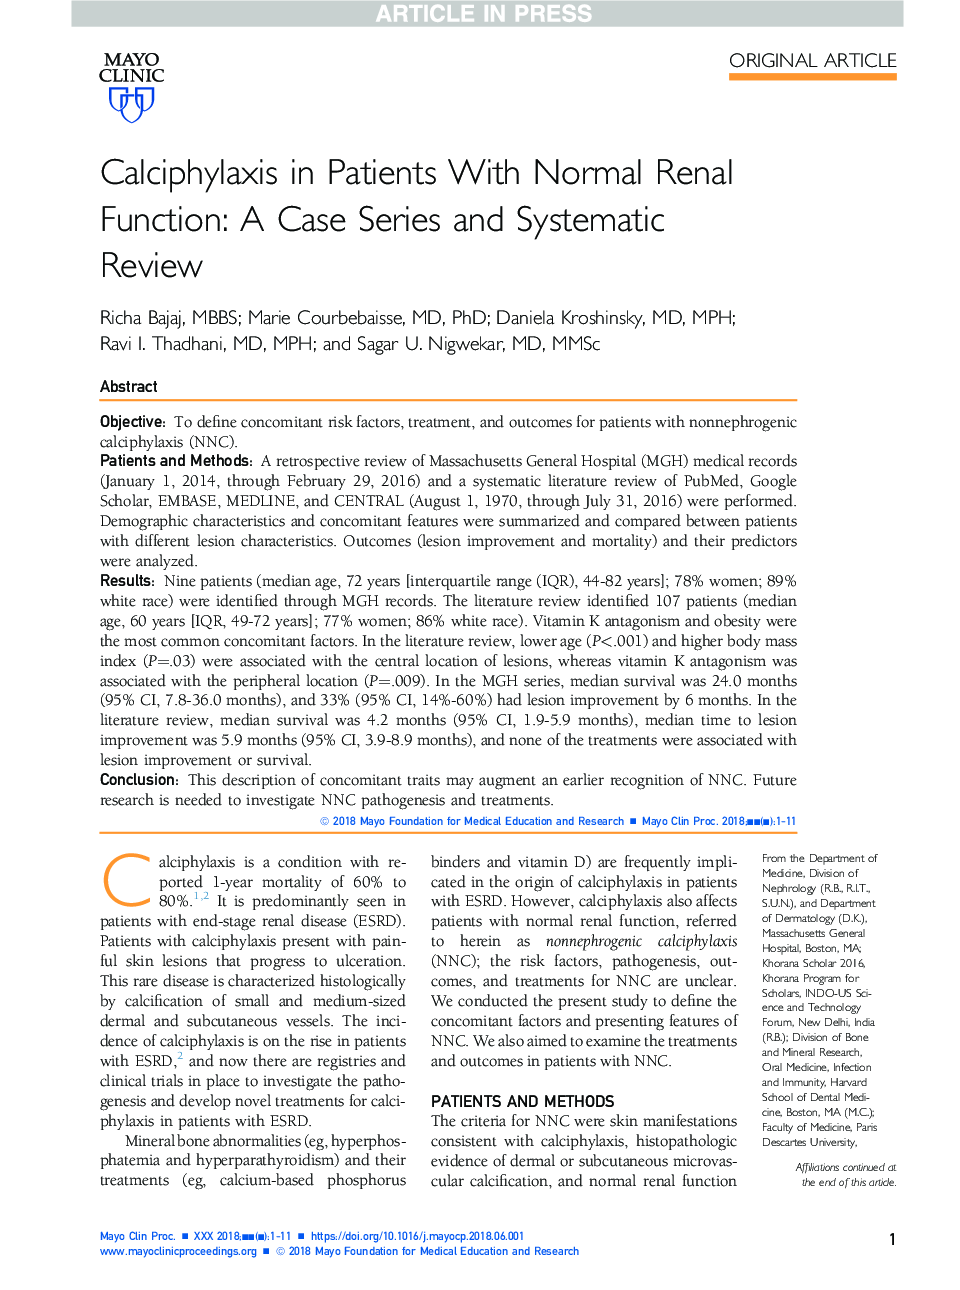 کلسیفیکاسیون در بیماران مبتلا به عملکرد کلیه طبیعی: یک سری موارد و بررسی سیستماتیک